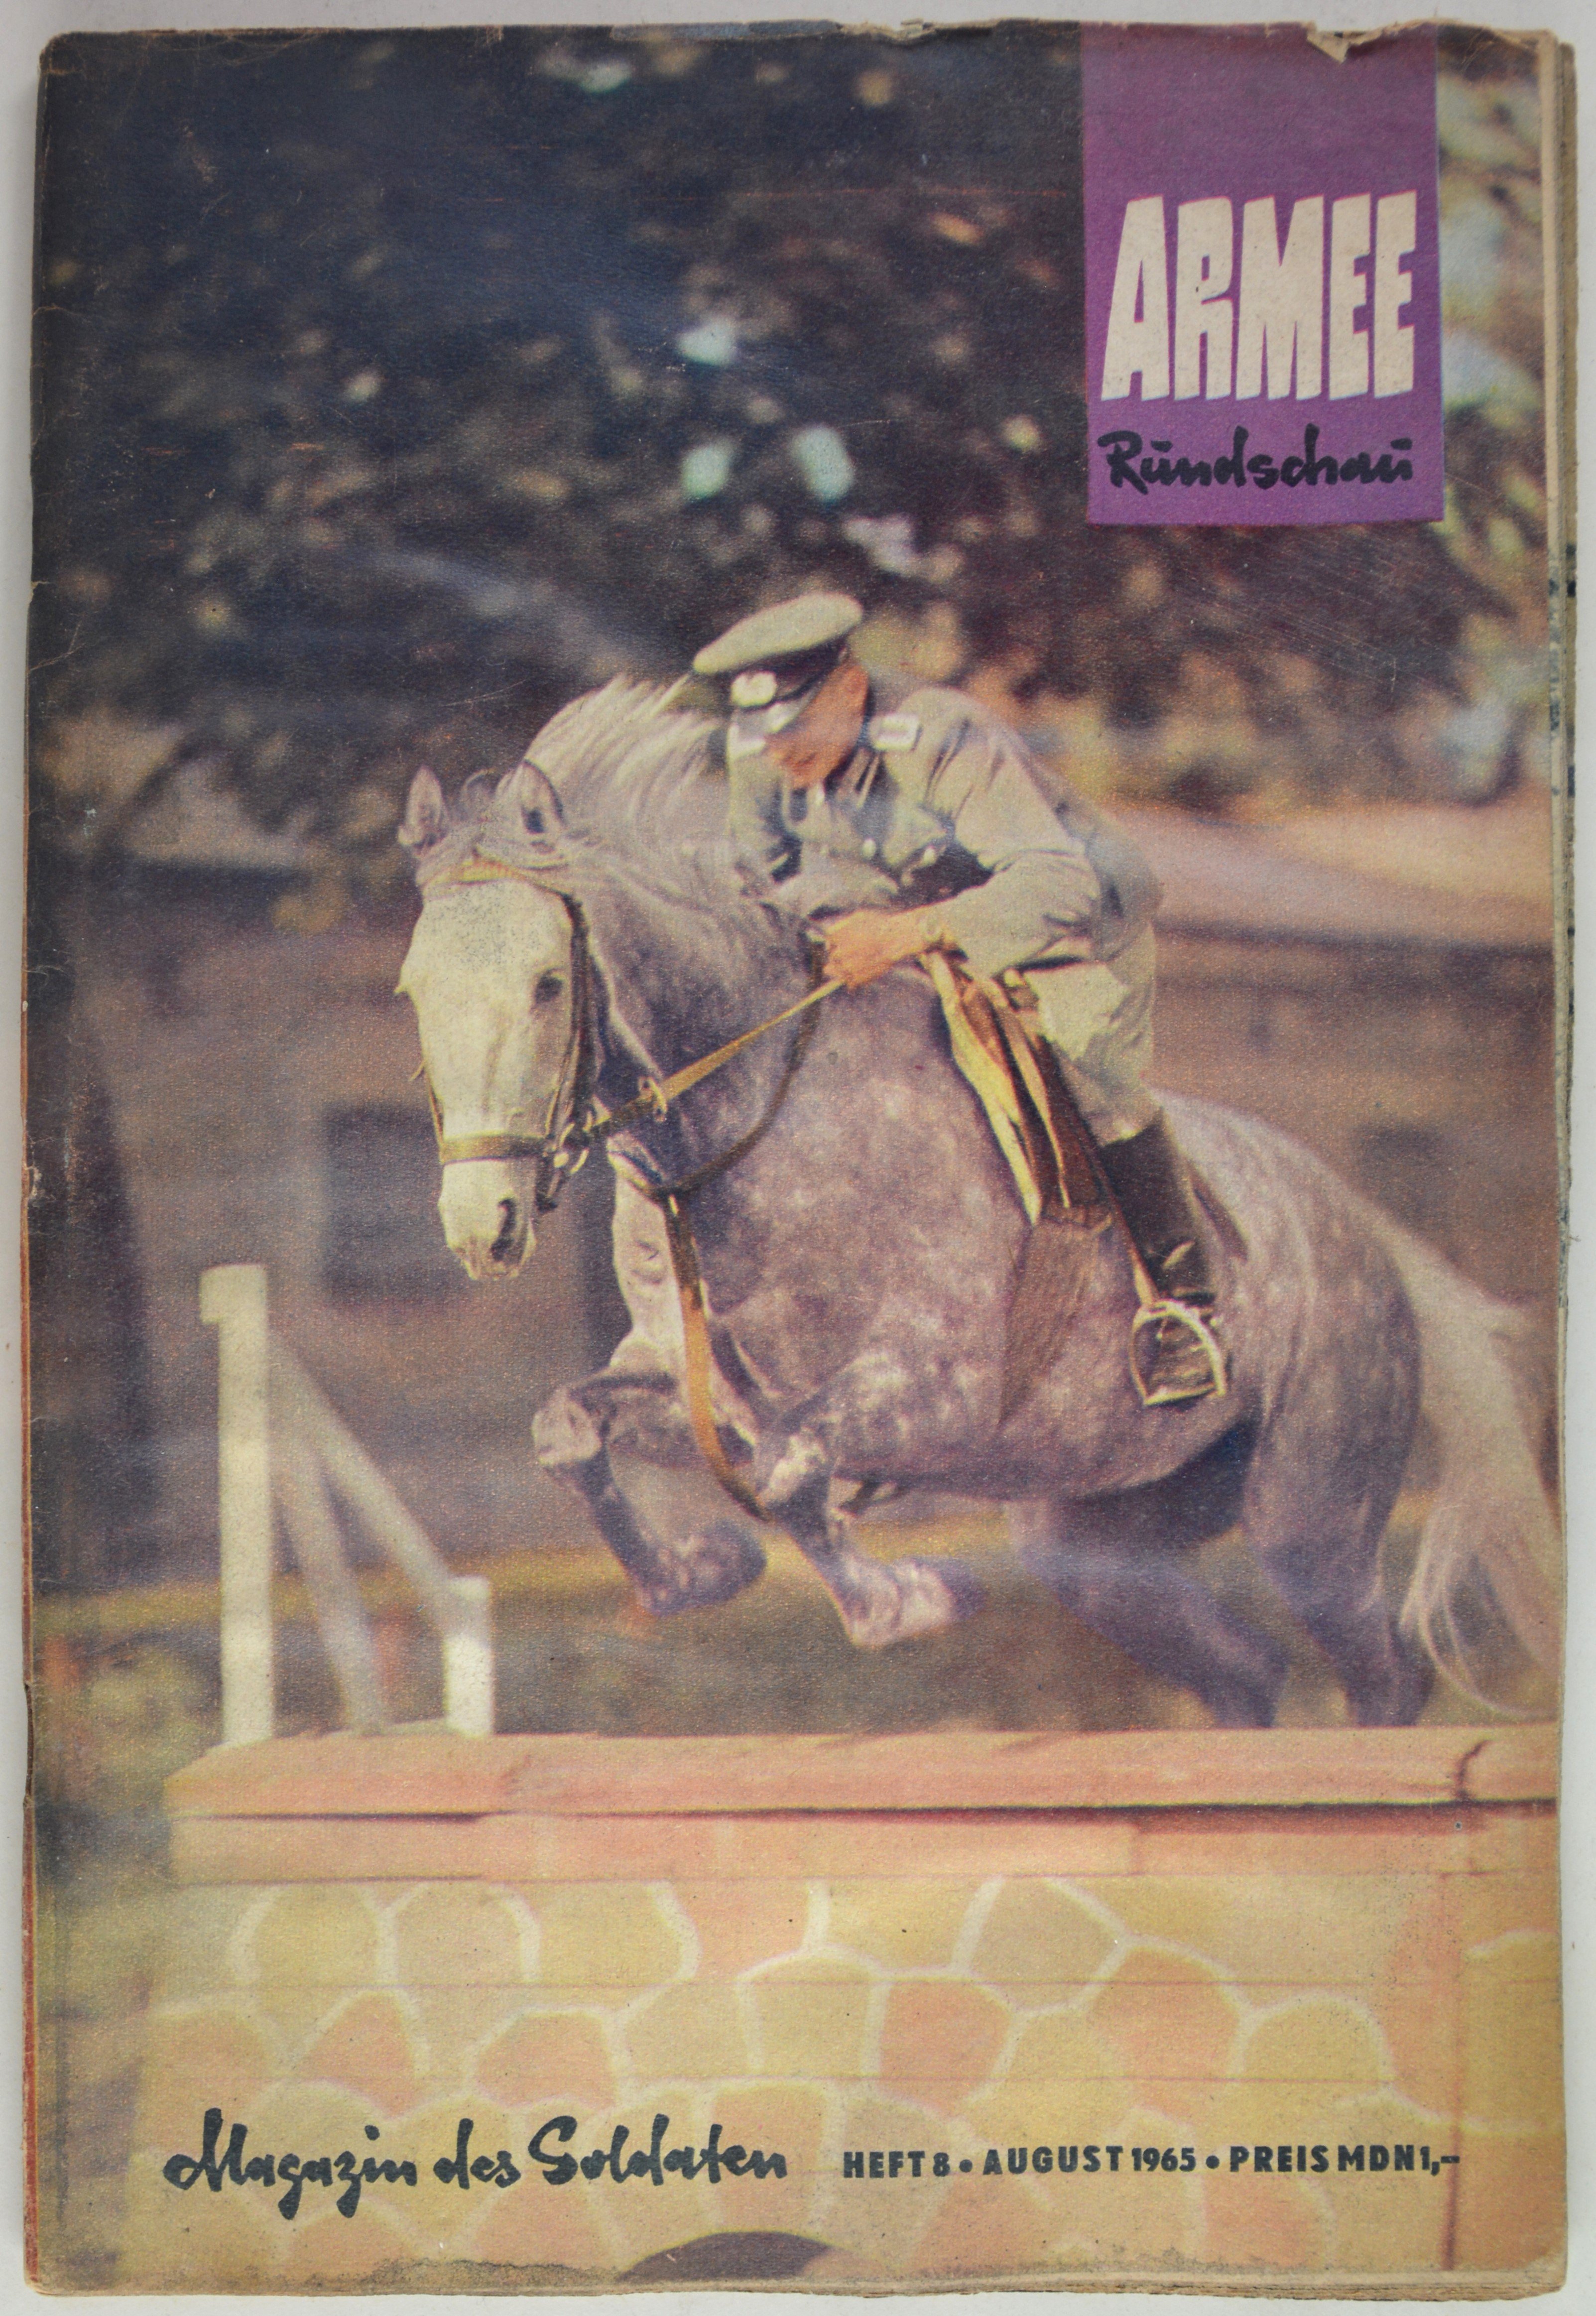 Armeerundschau - Magazin des Soldaten (1965), Heft 8 (DDR Geschichtsmuseum im Dokumentationszentrum Perleberg CC BY-SA)